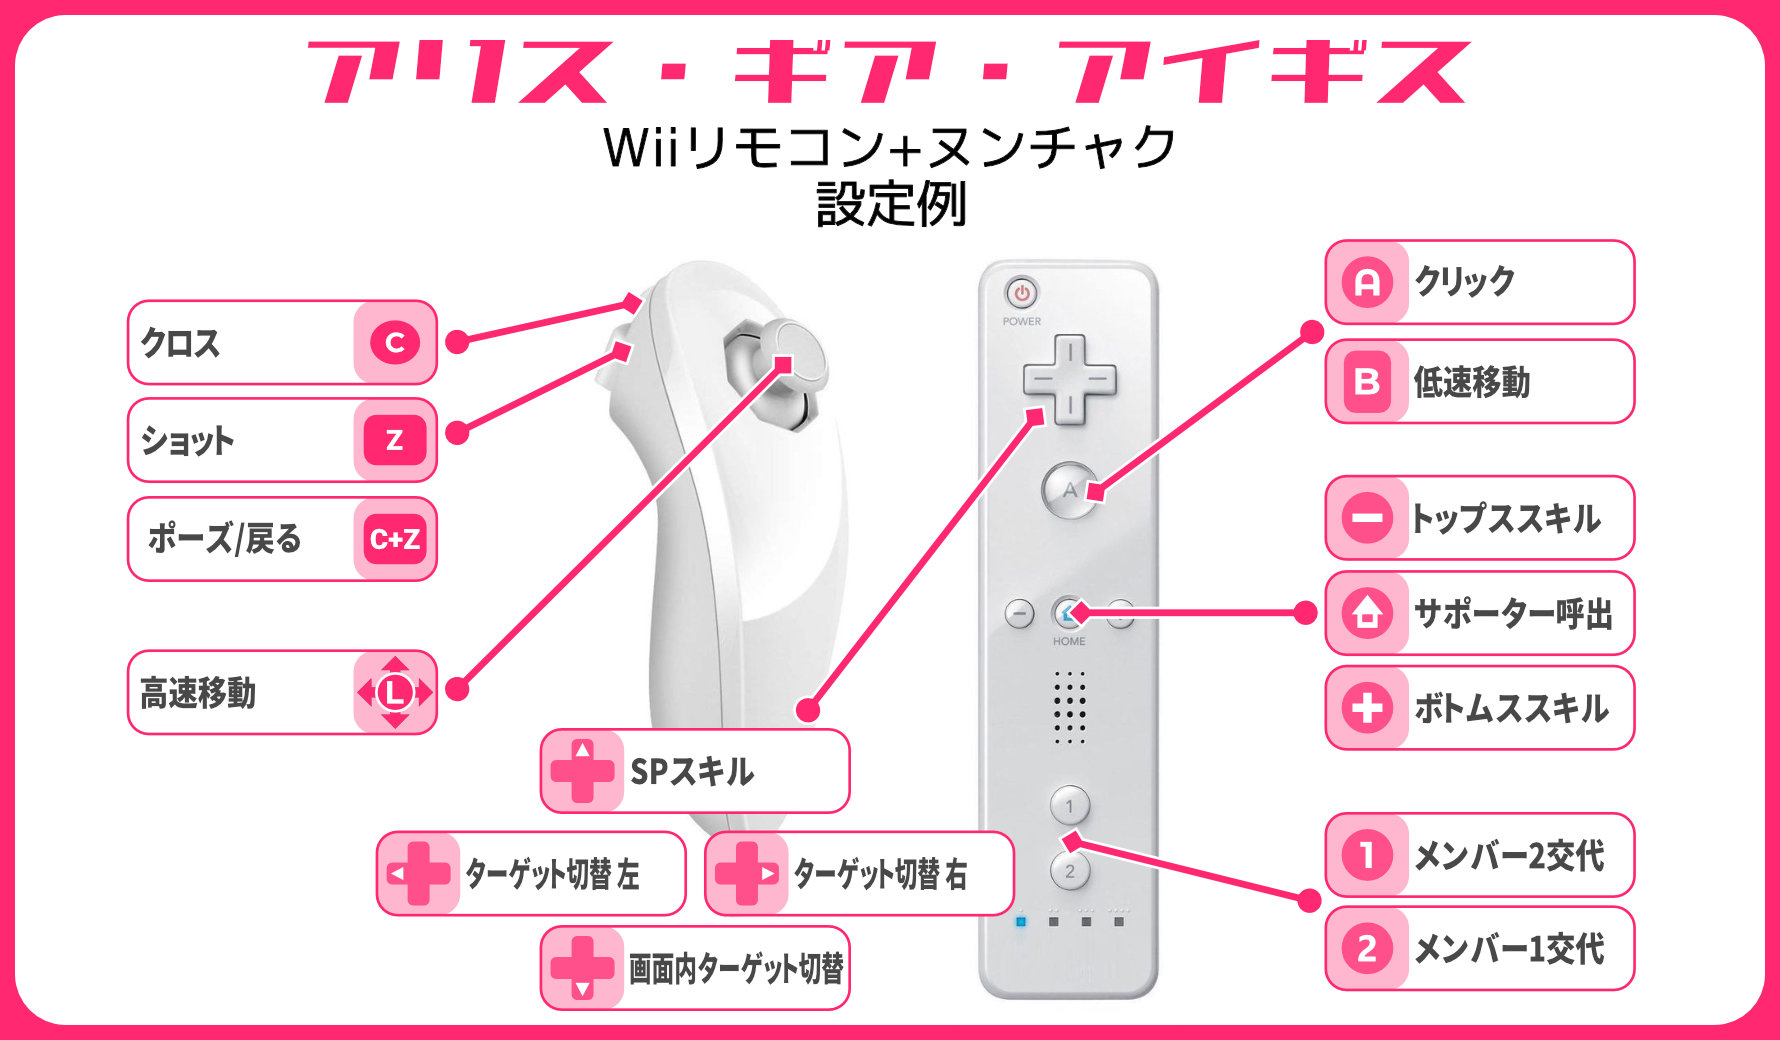 おっさん Wiiリモコン をwindows10にbluetoothでペアリングして Glovepie Bluetooth機器用のjoytokeyみたいなソフト 上にて各キーを設定 してます 実際にwiiで遊ぶ時と同じようにリモコンを向けるだけでマウスカーソルも動かせるので これで自在にフリック